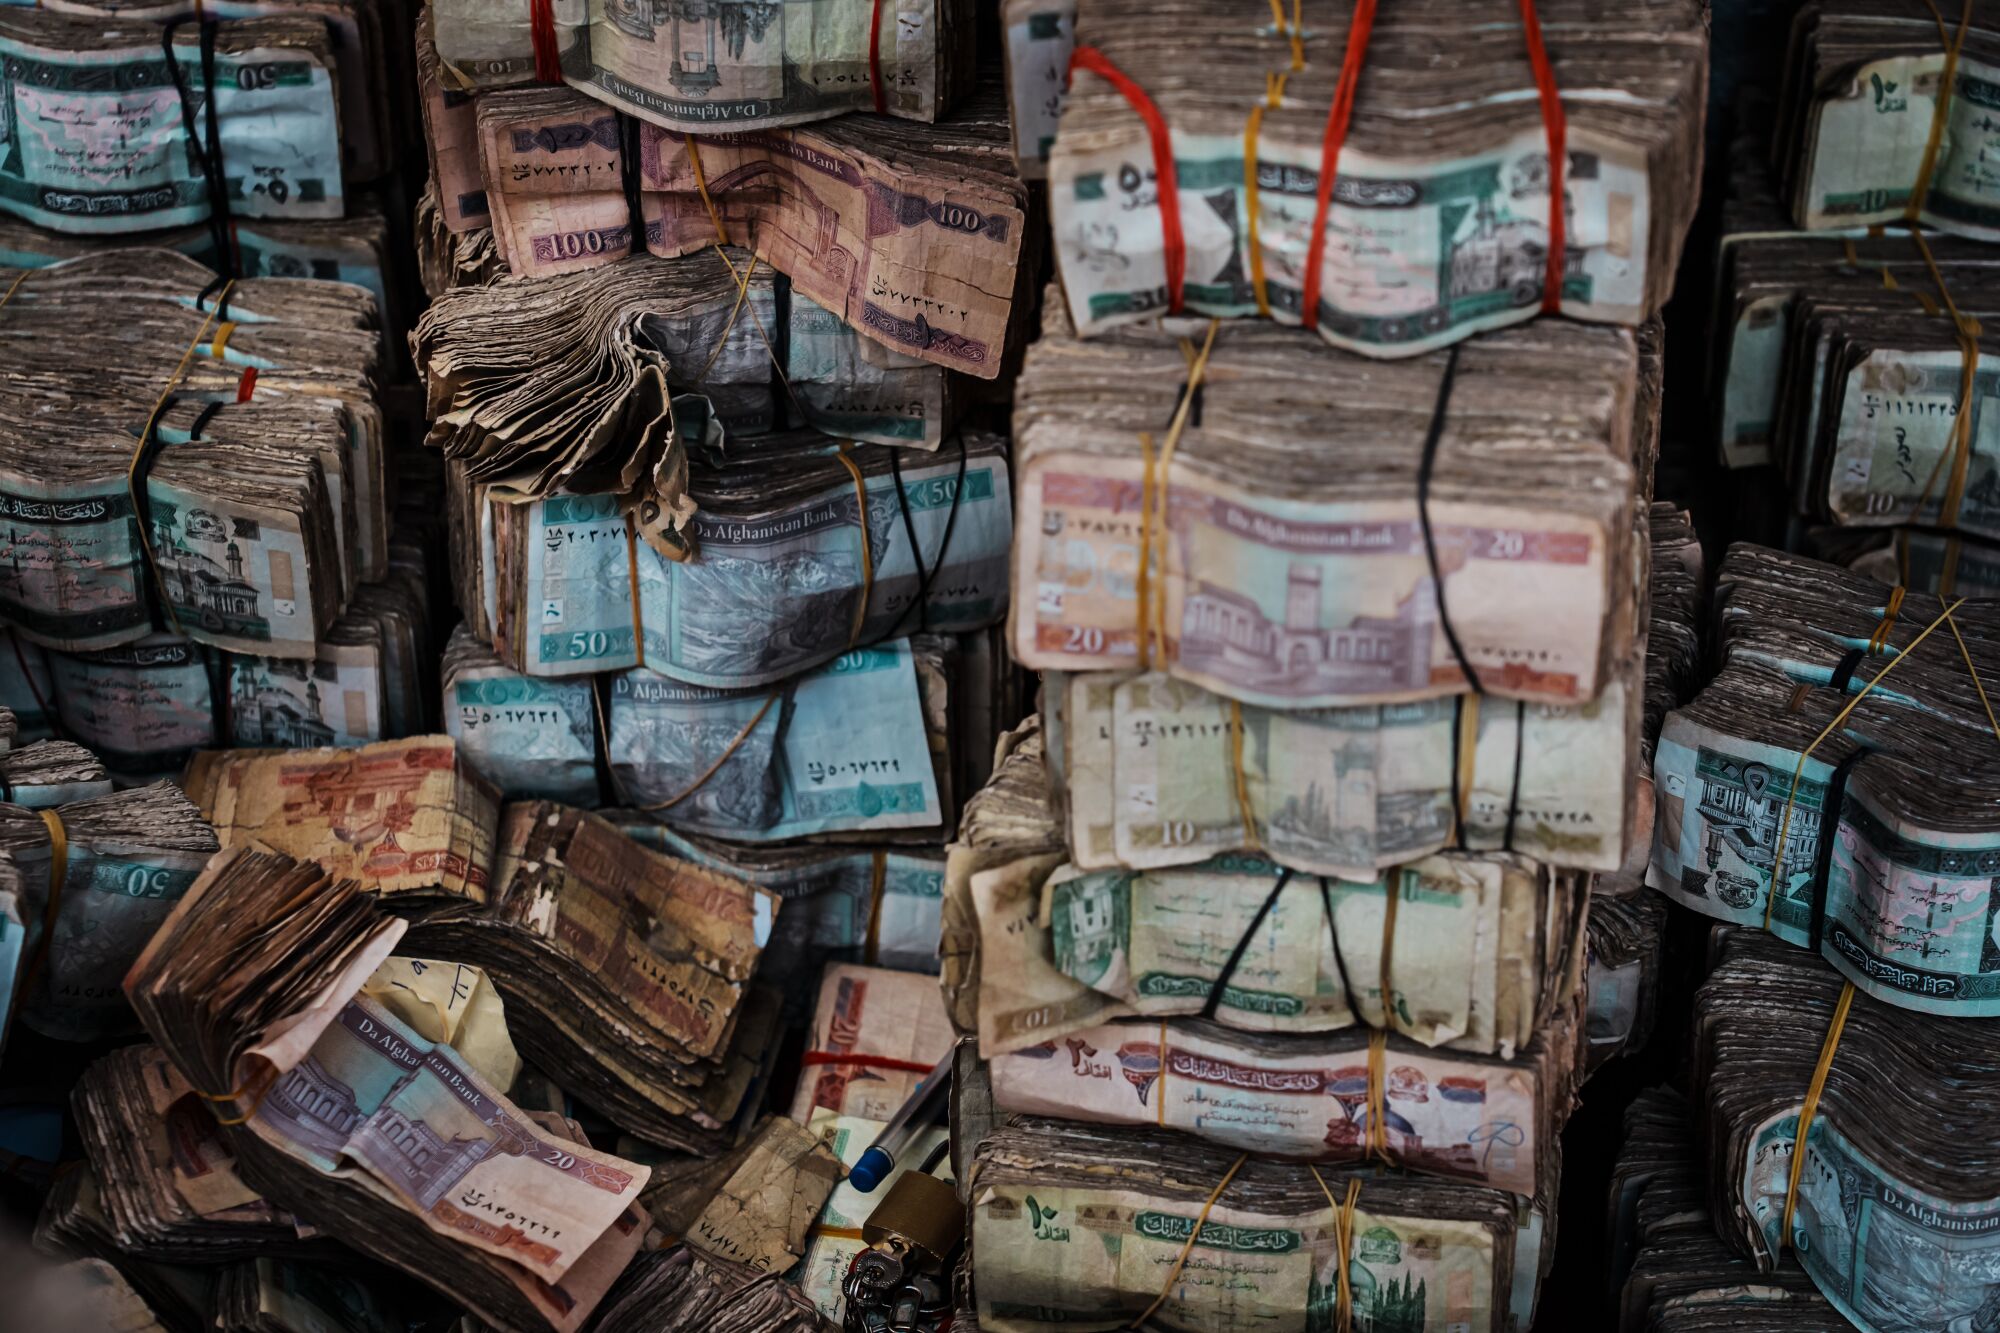 Bundles of Afghan currency